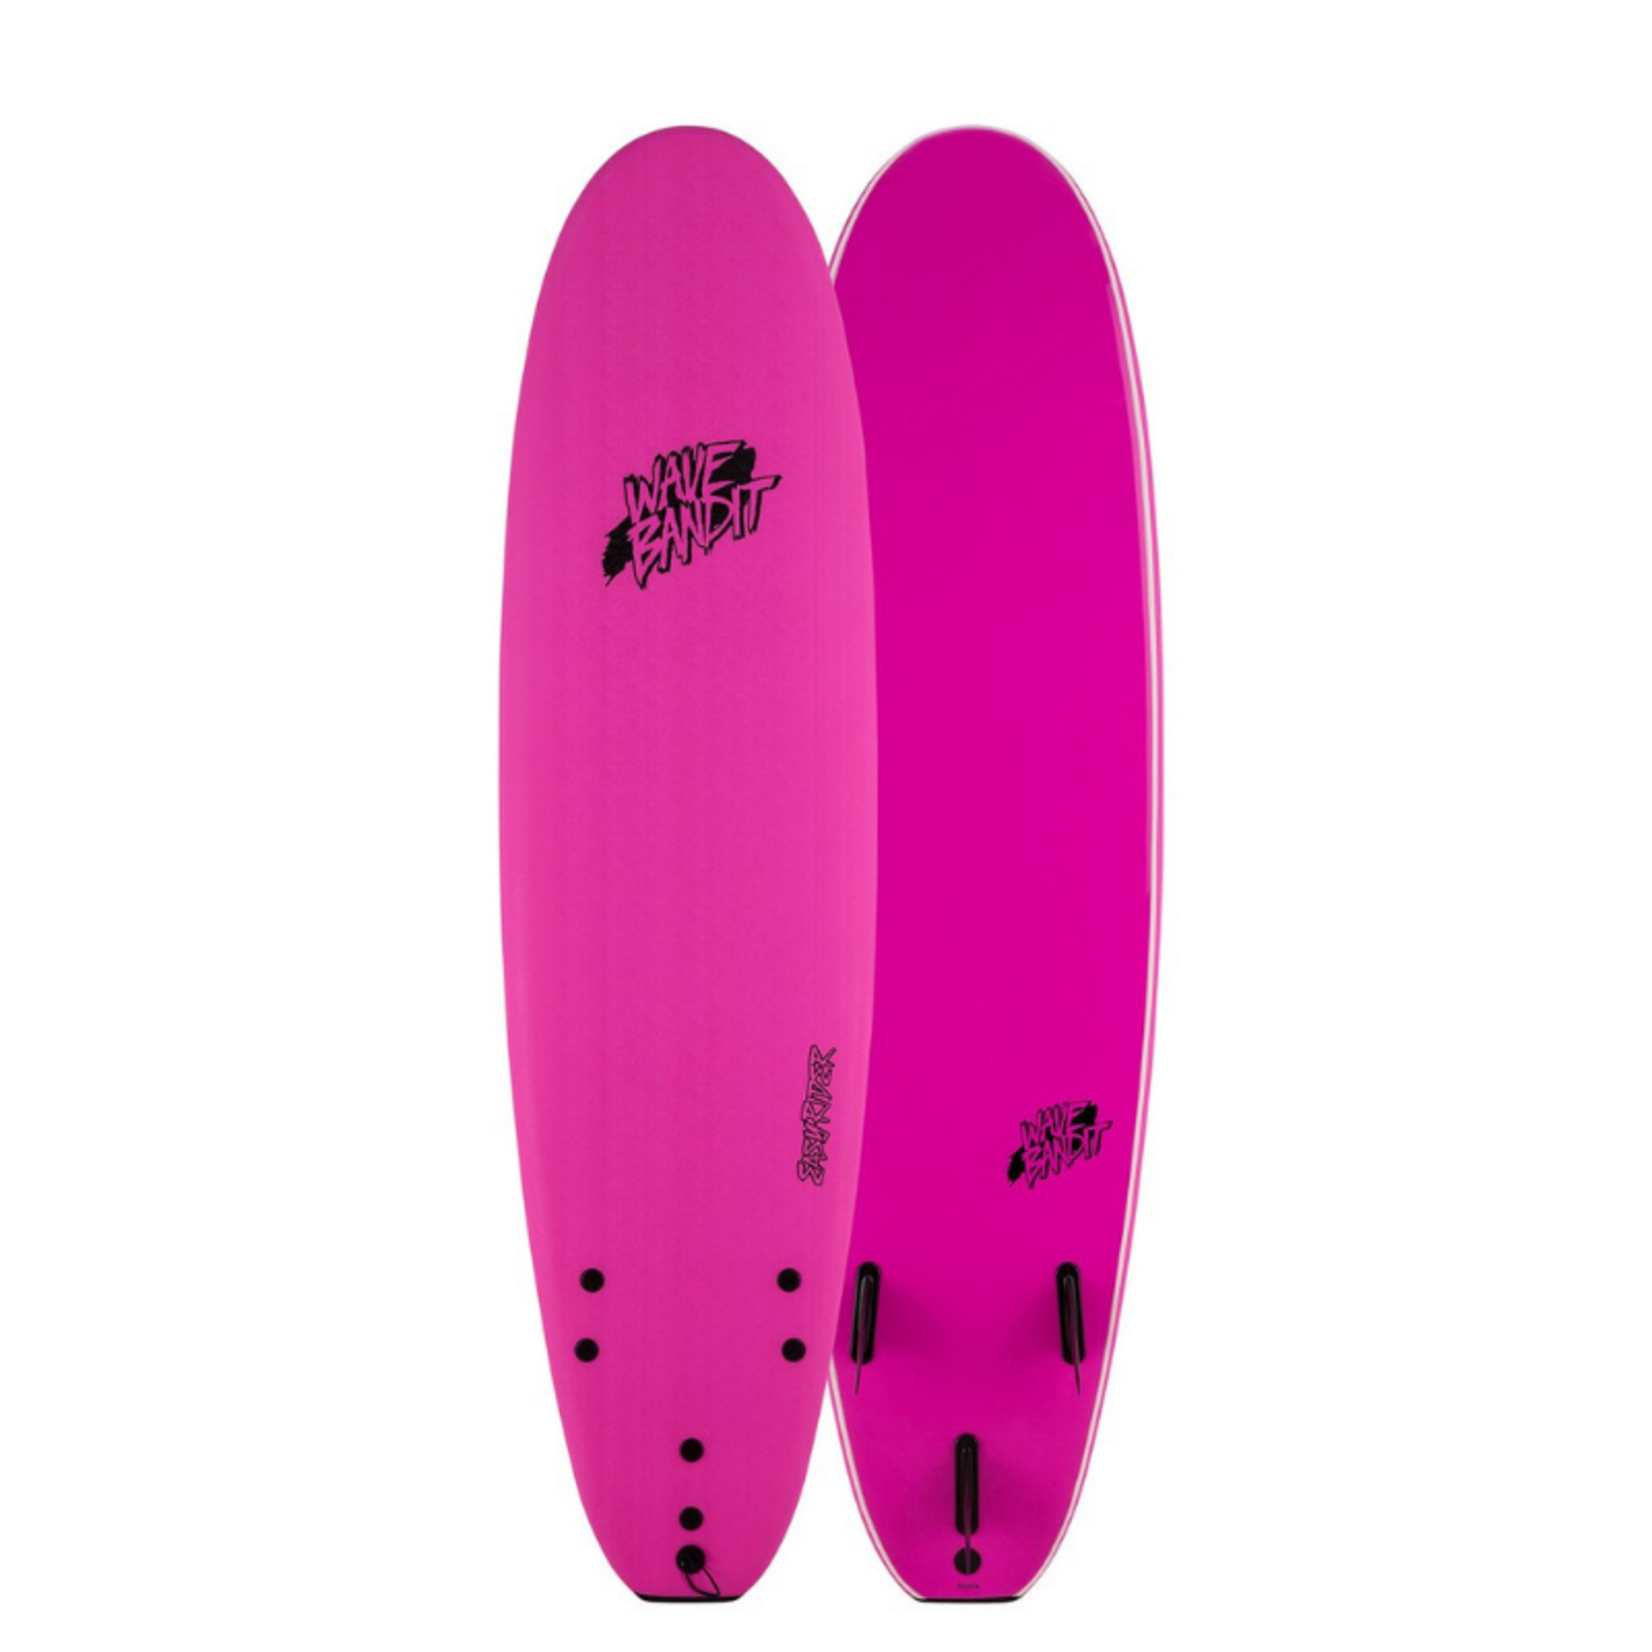 Catch Surf 7'0 Wave Bandit EZ Rider Surfboard Pink